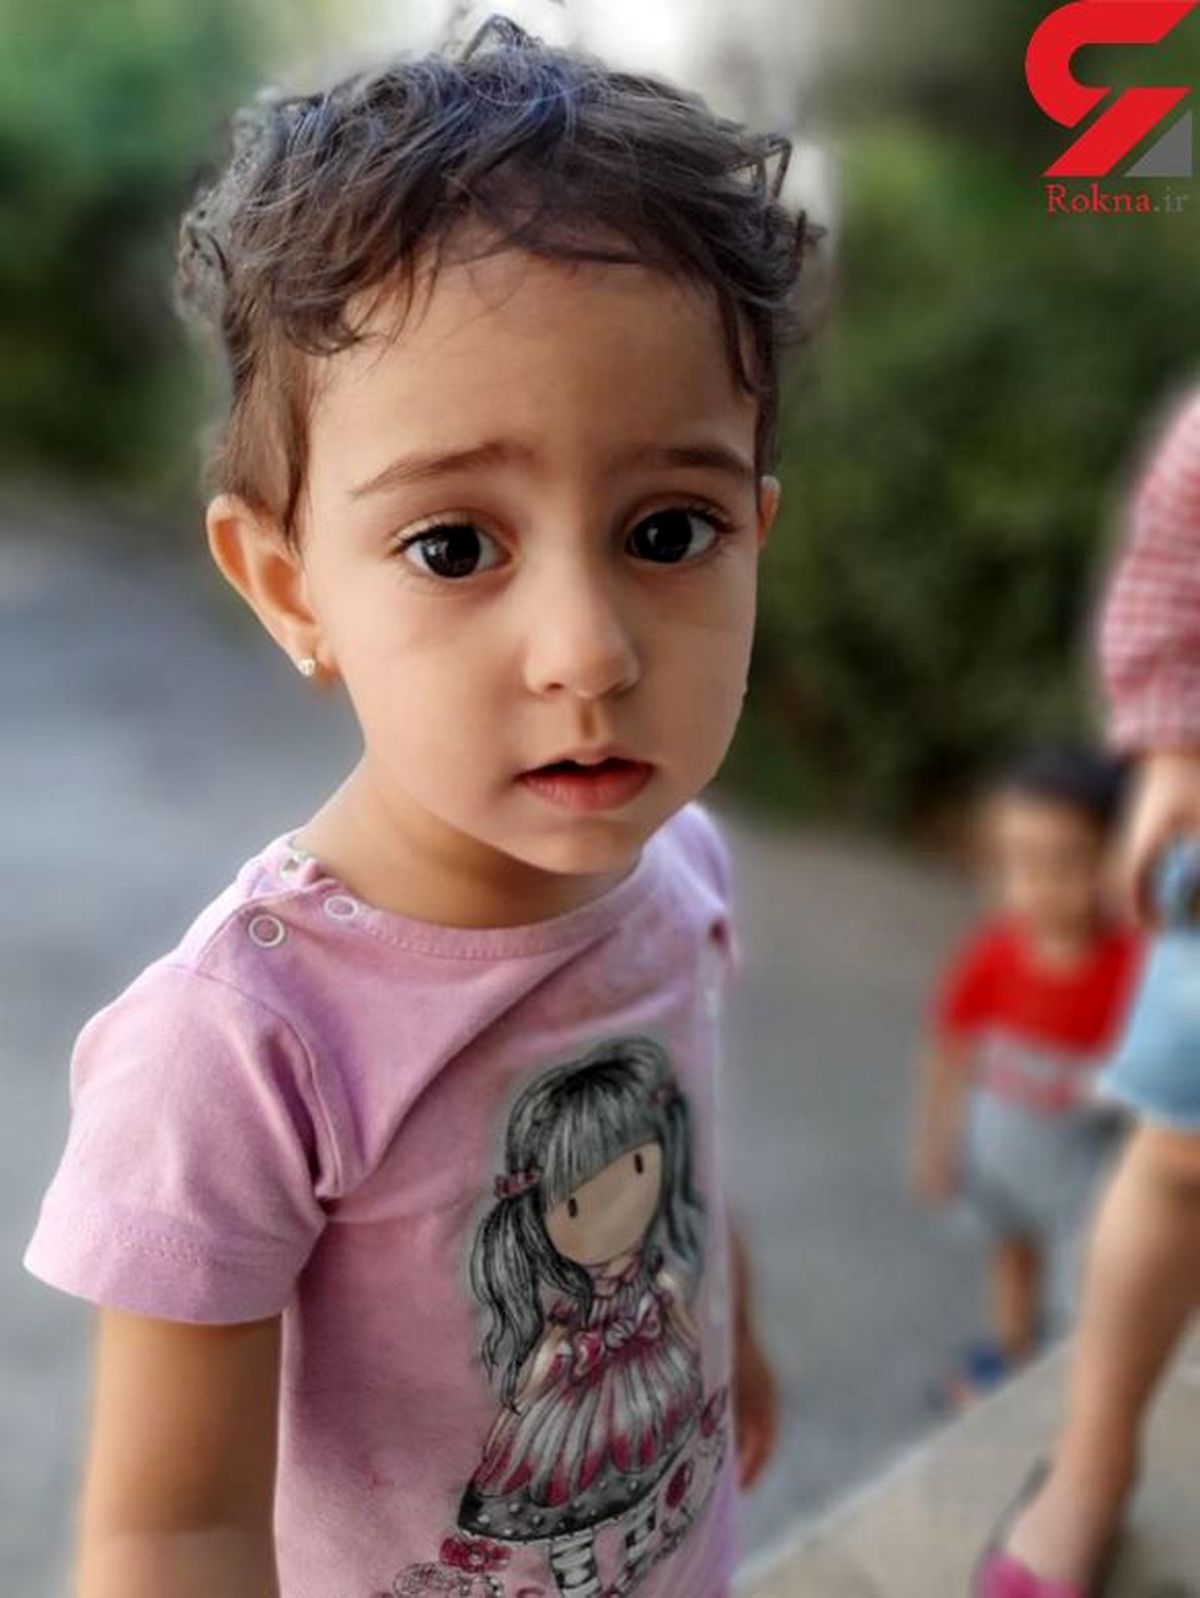 زهرا 2 ساله در جنوب تهران گم شد / او را دیدید به پلیس خبر دهید